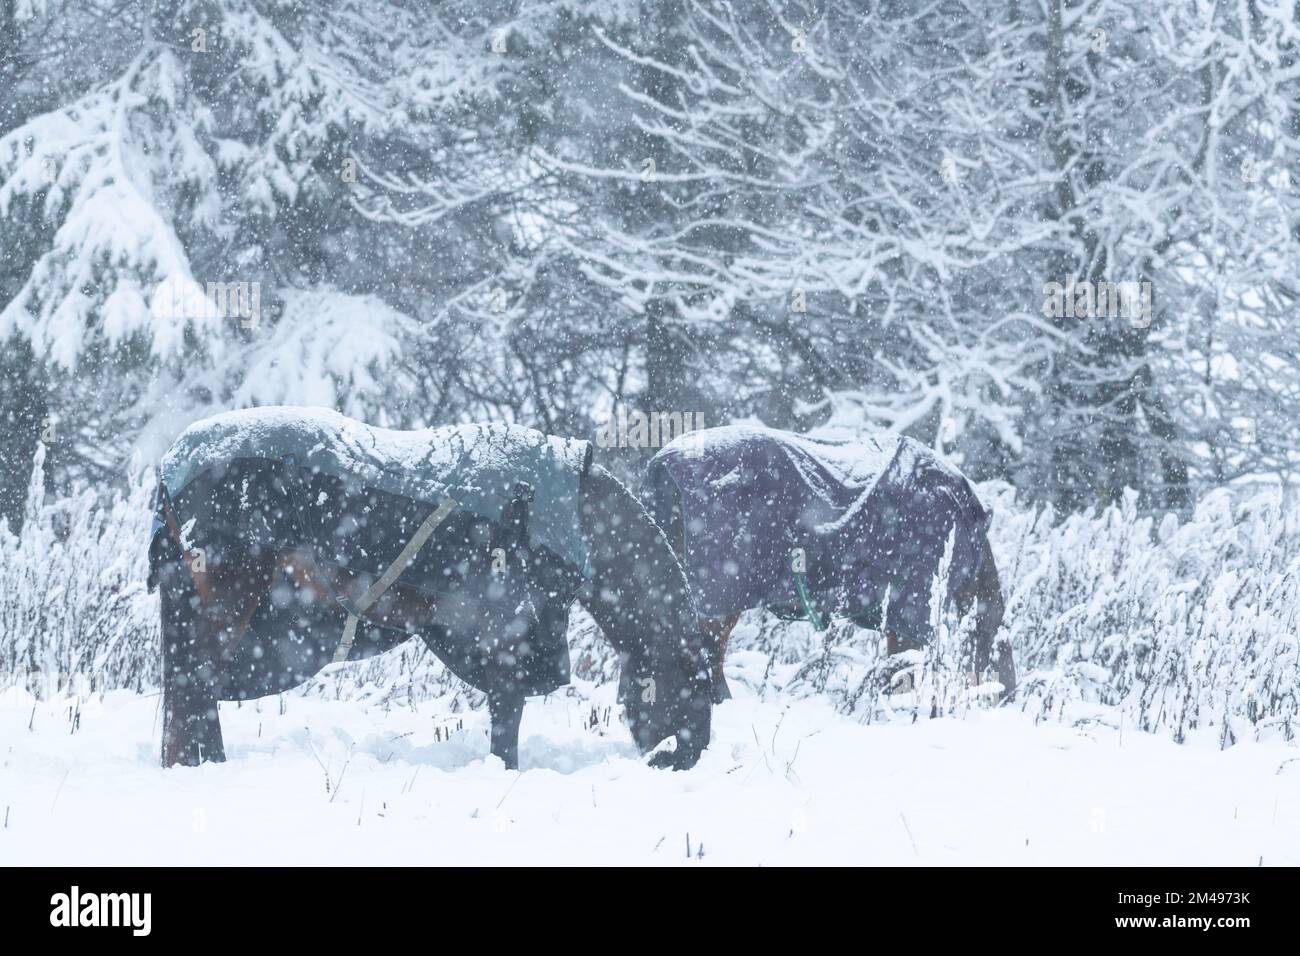 Deux chevaux avec couvertures enneigées à la recherche de nourriture dans la neige quand il neige Banque D'Images